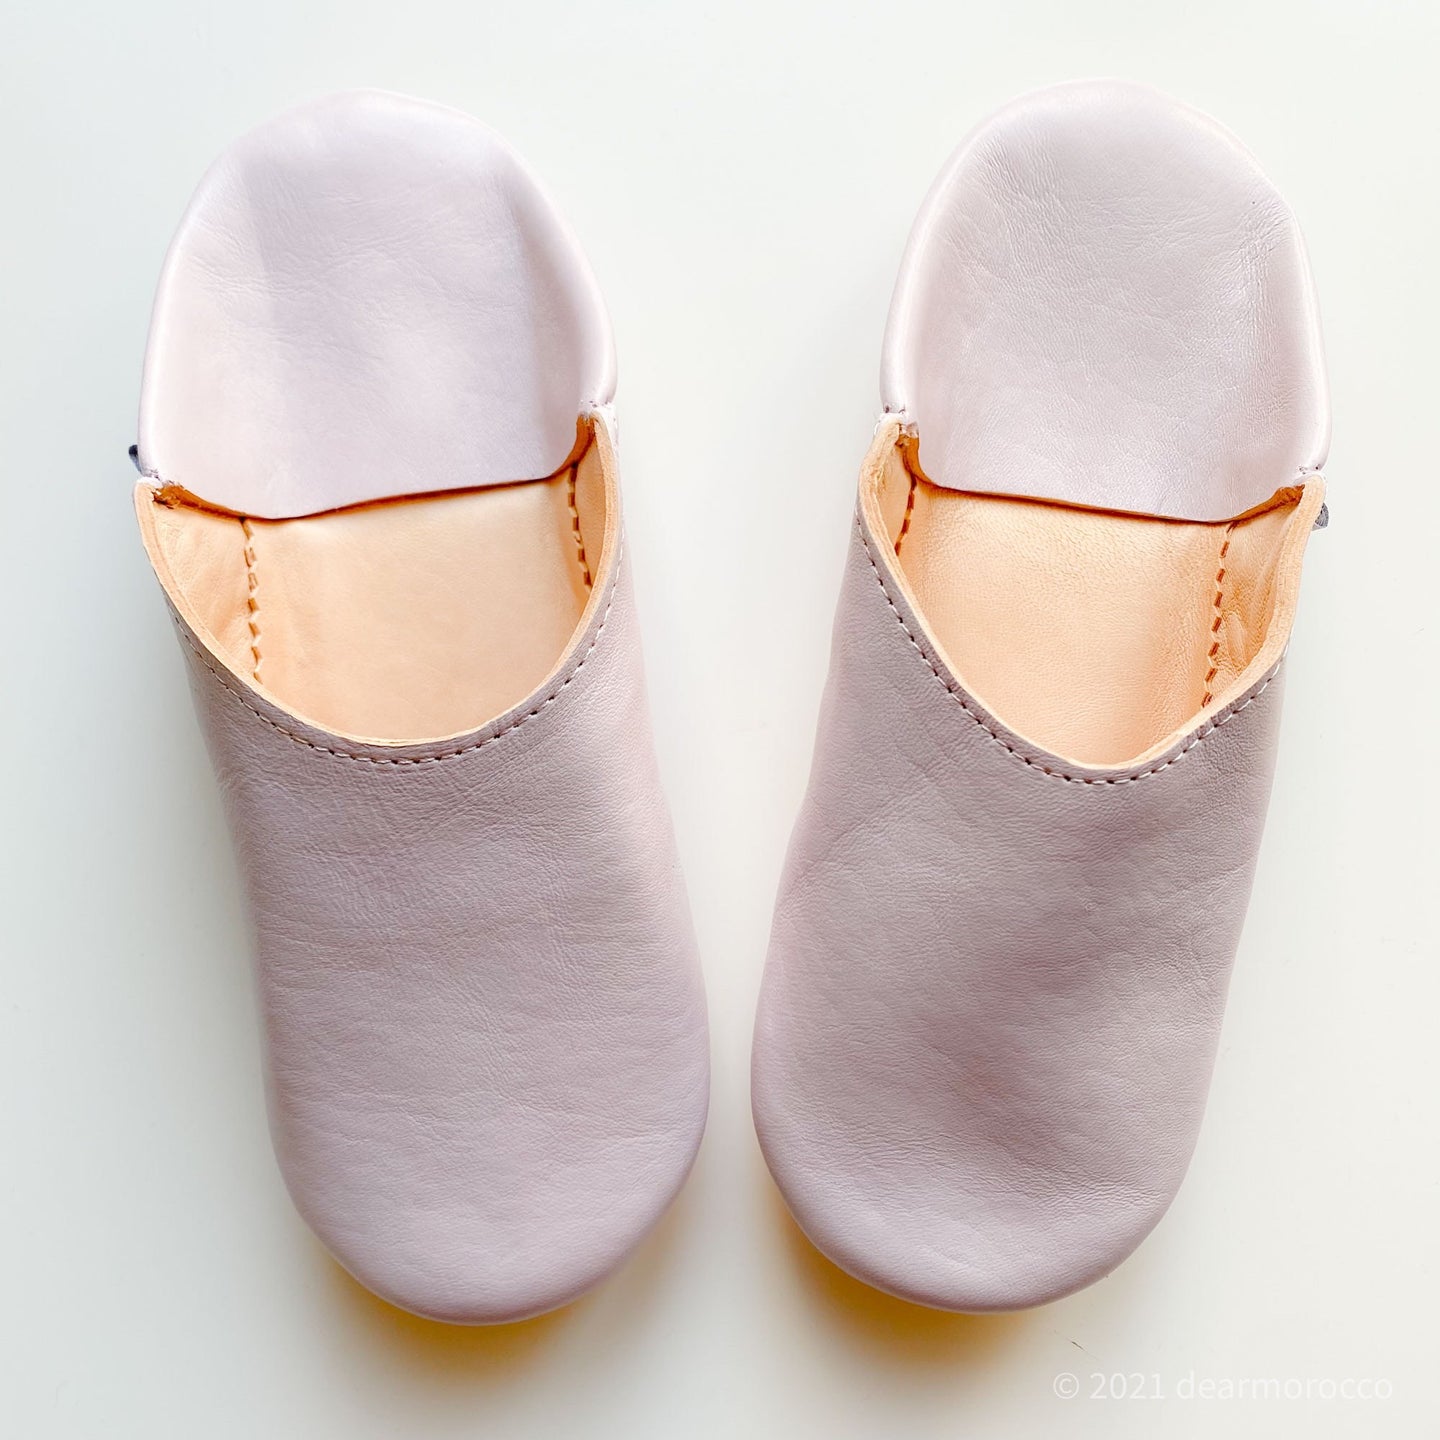 Simple Babouche Lilla // dear Morocco original leather slippers